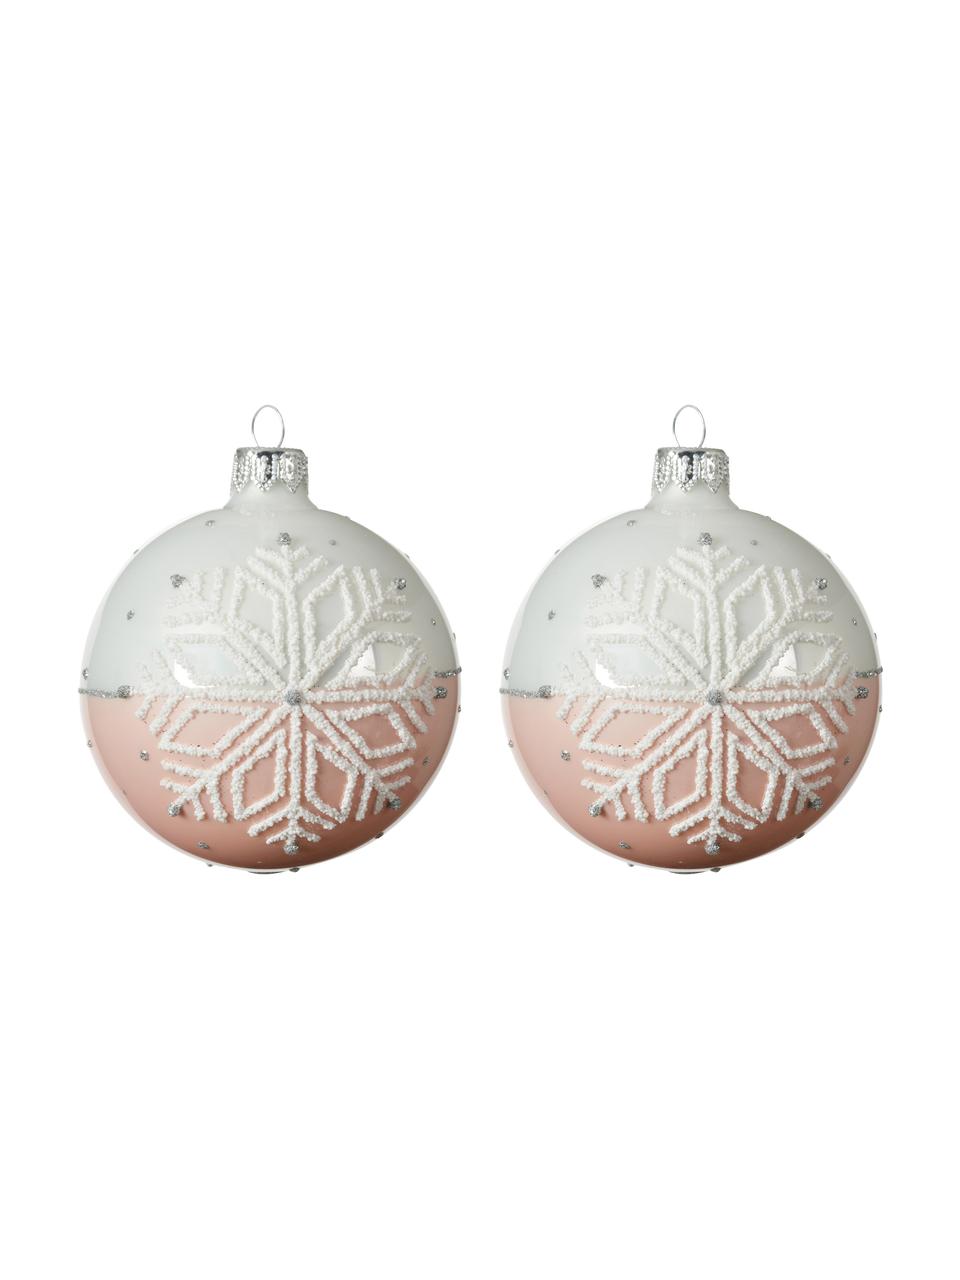 Kerstballen Snowflake Ø 8 cm, 2 stuks, Wit, roze, Ø 8 x H 8 cm